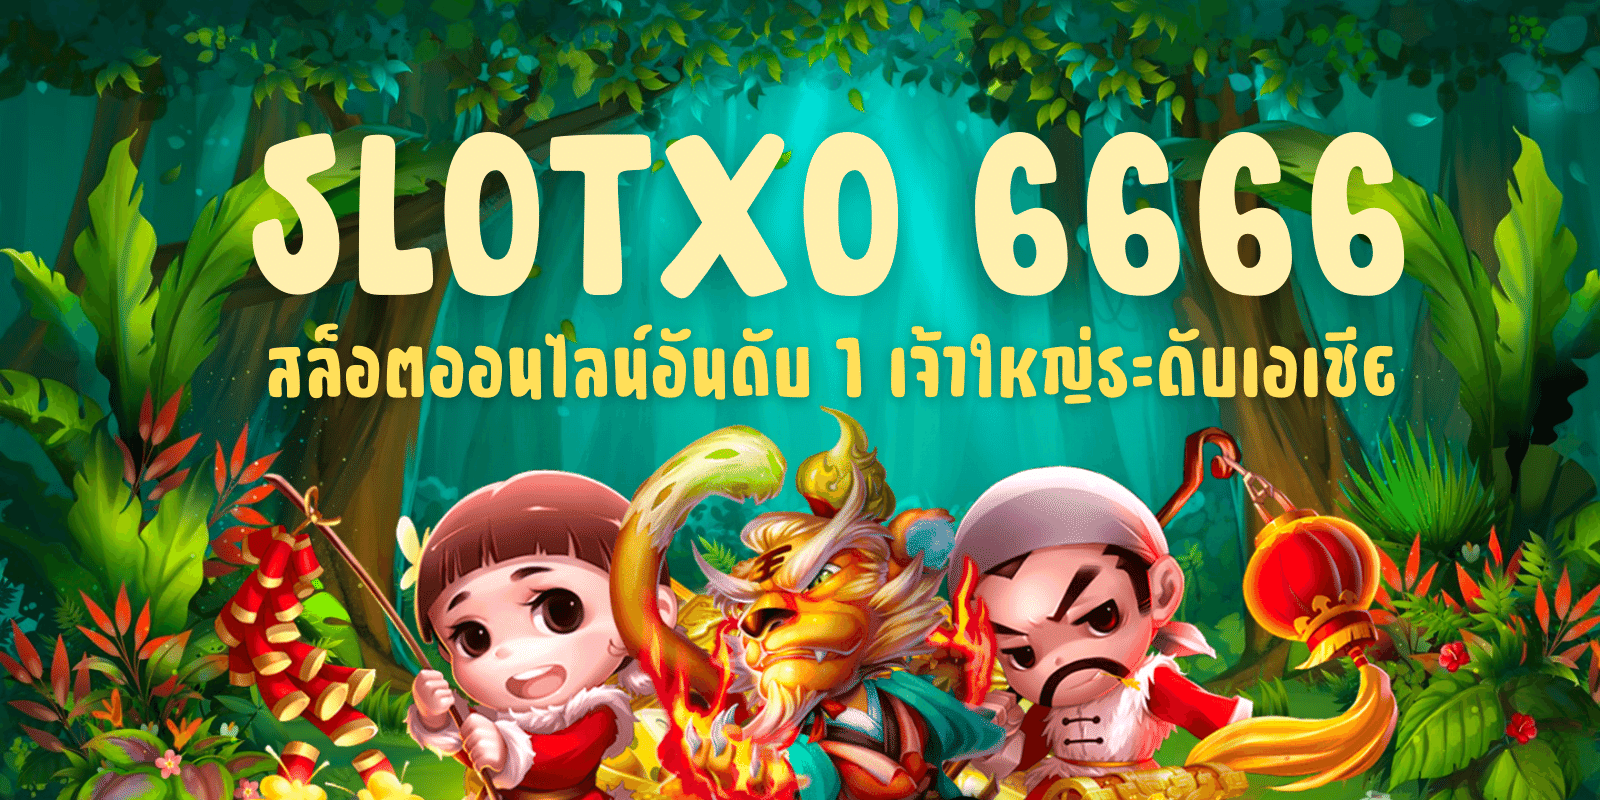 slotxo 6666 สล็อตออนไลน์อันดับ1 เจ้าใหญ่ระดับเอเชีย